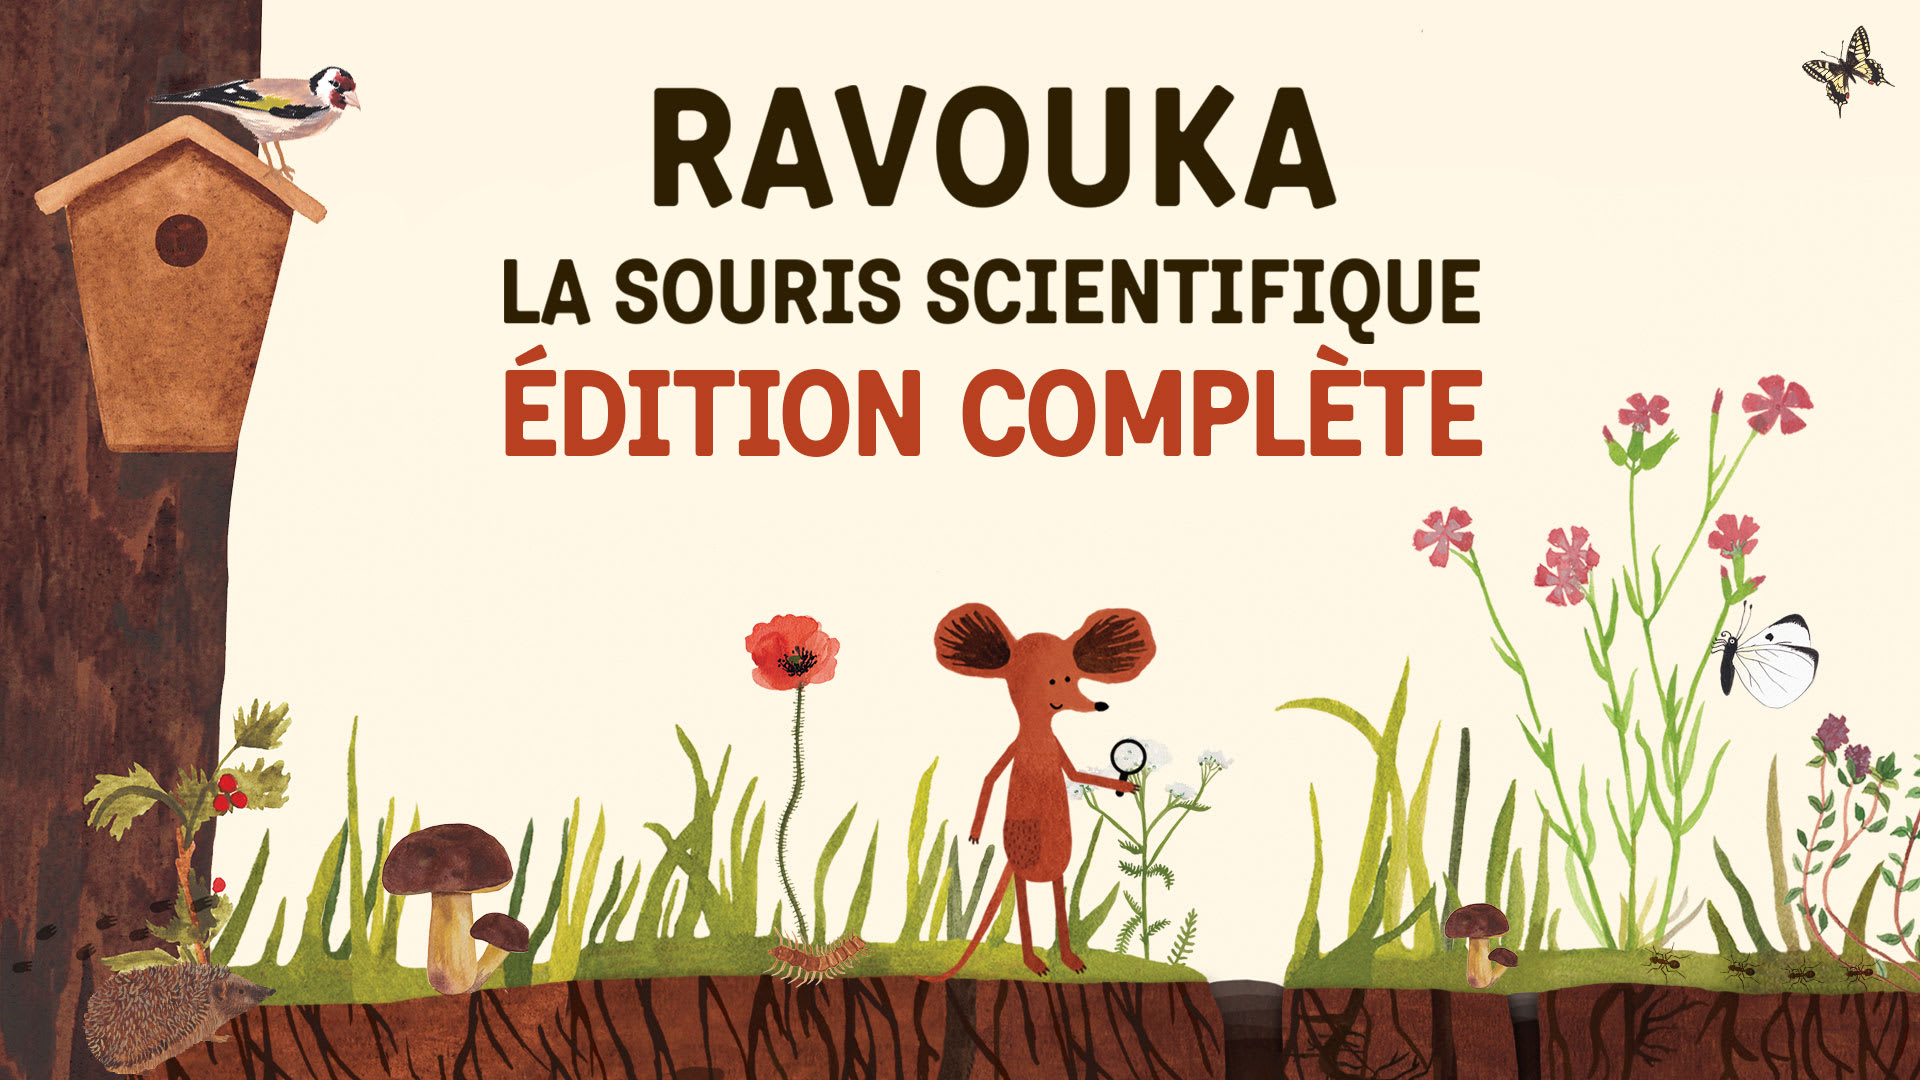 Ravouka La souris scientifique Édition complète